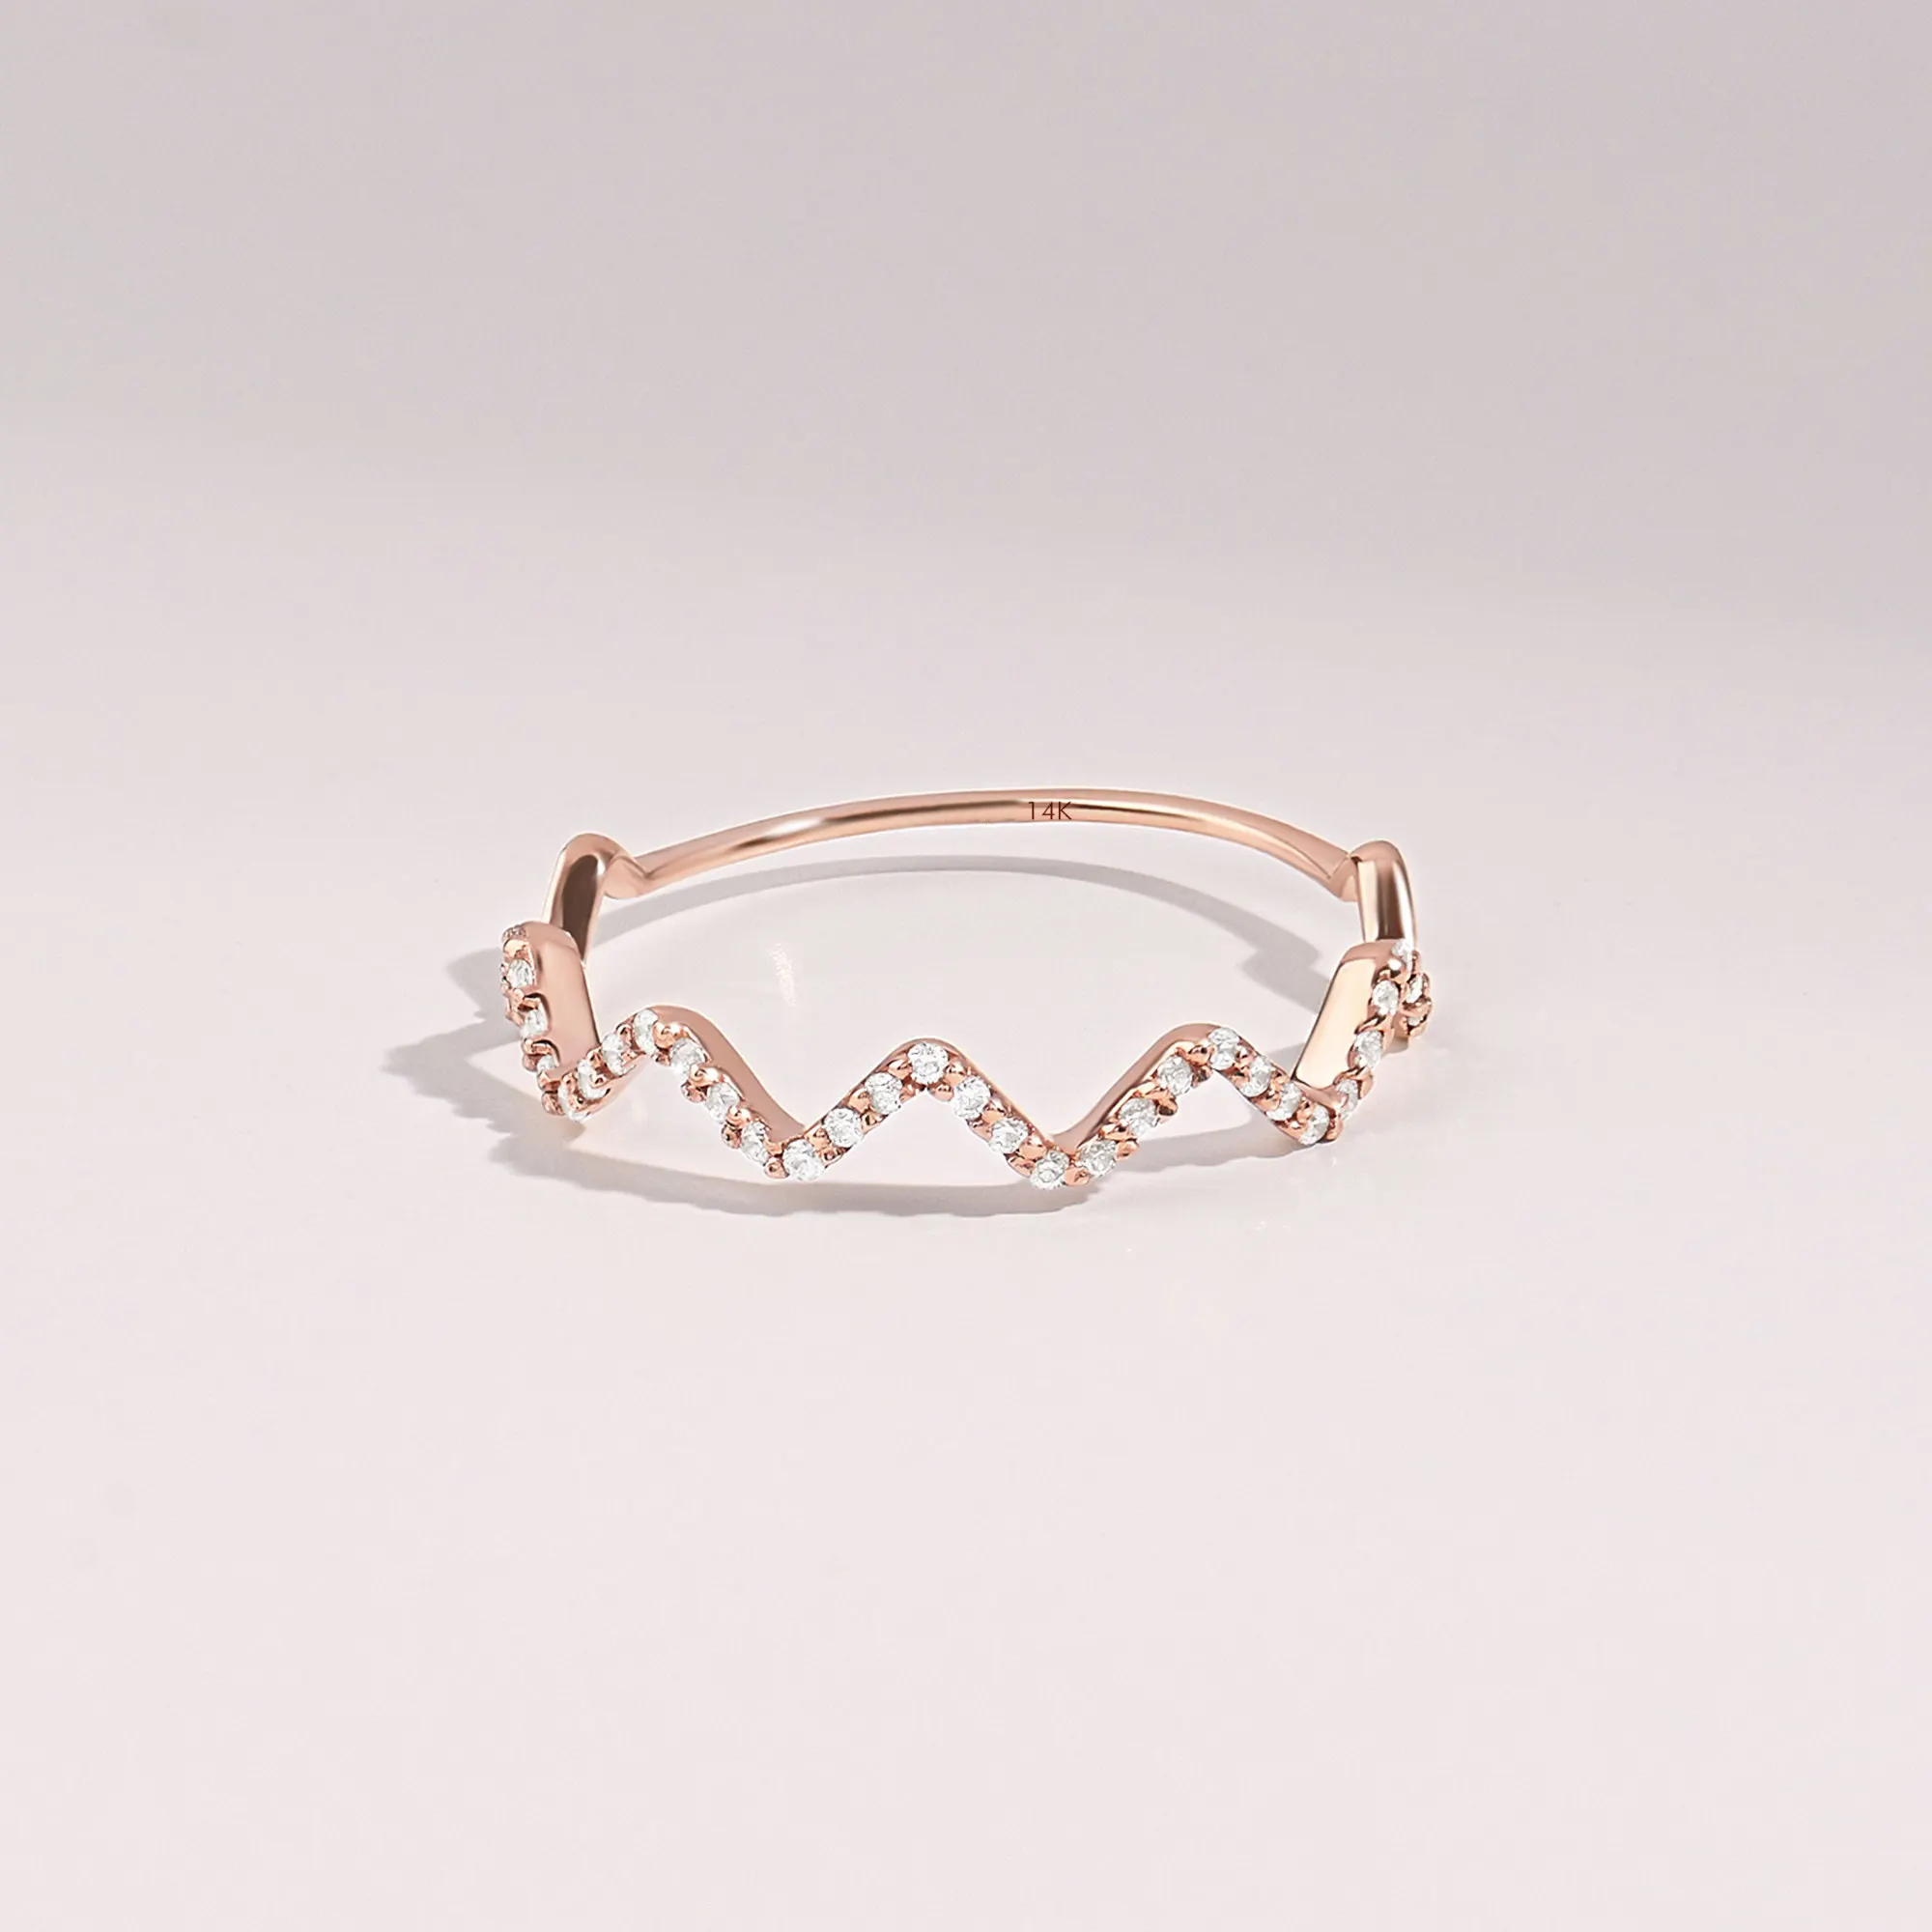 Cincin pertunangan berlian mewah kustom cincin desain cantik kecil emas 14k dengan berlian alami perhiasan wanita gadis